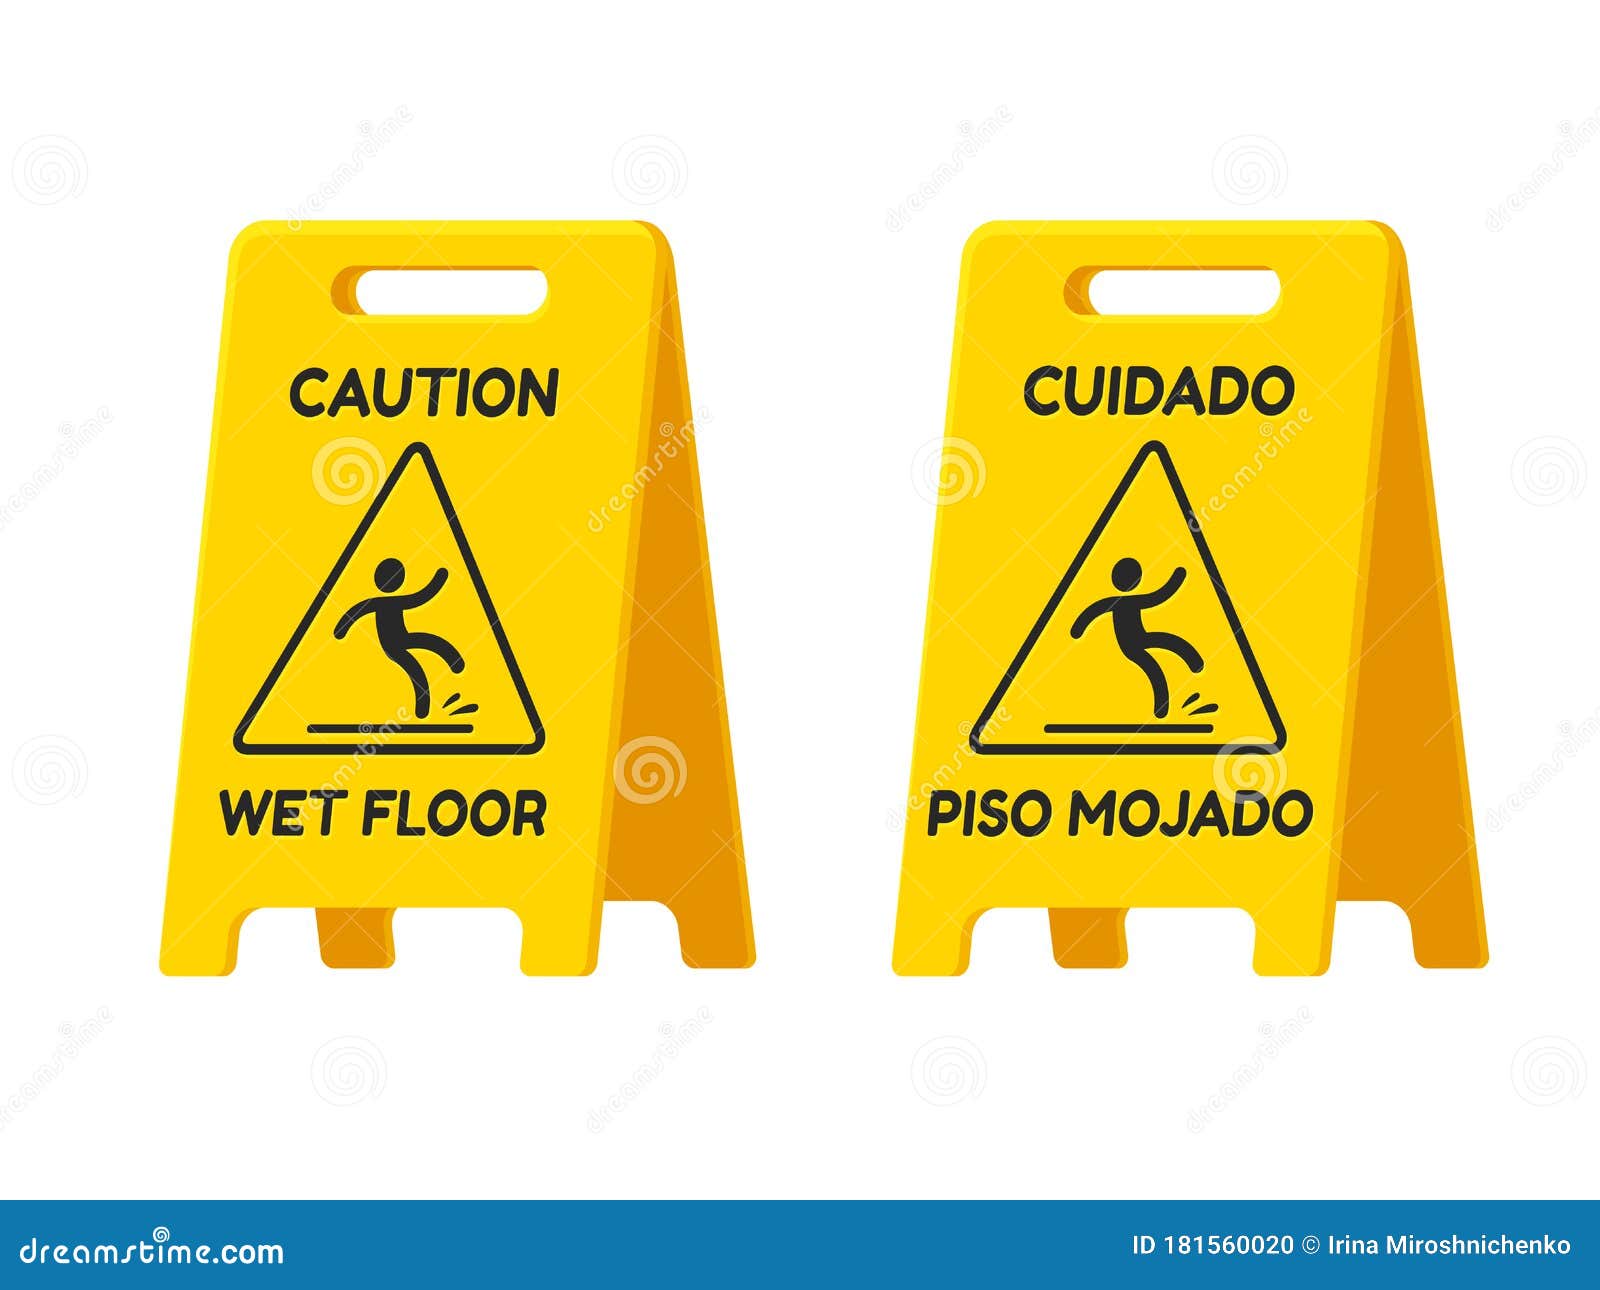 caution, wet floor